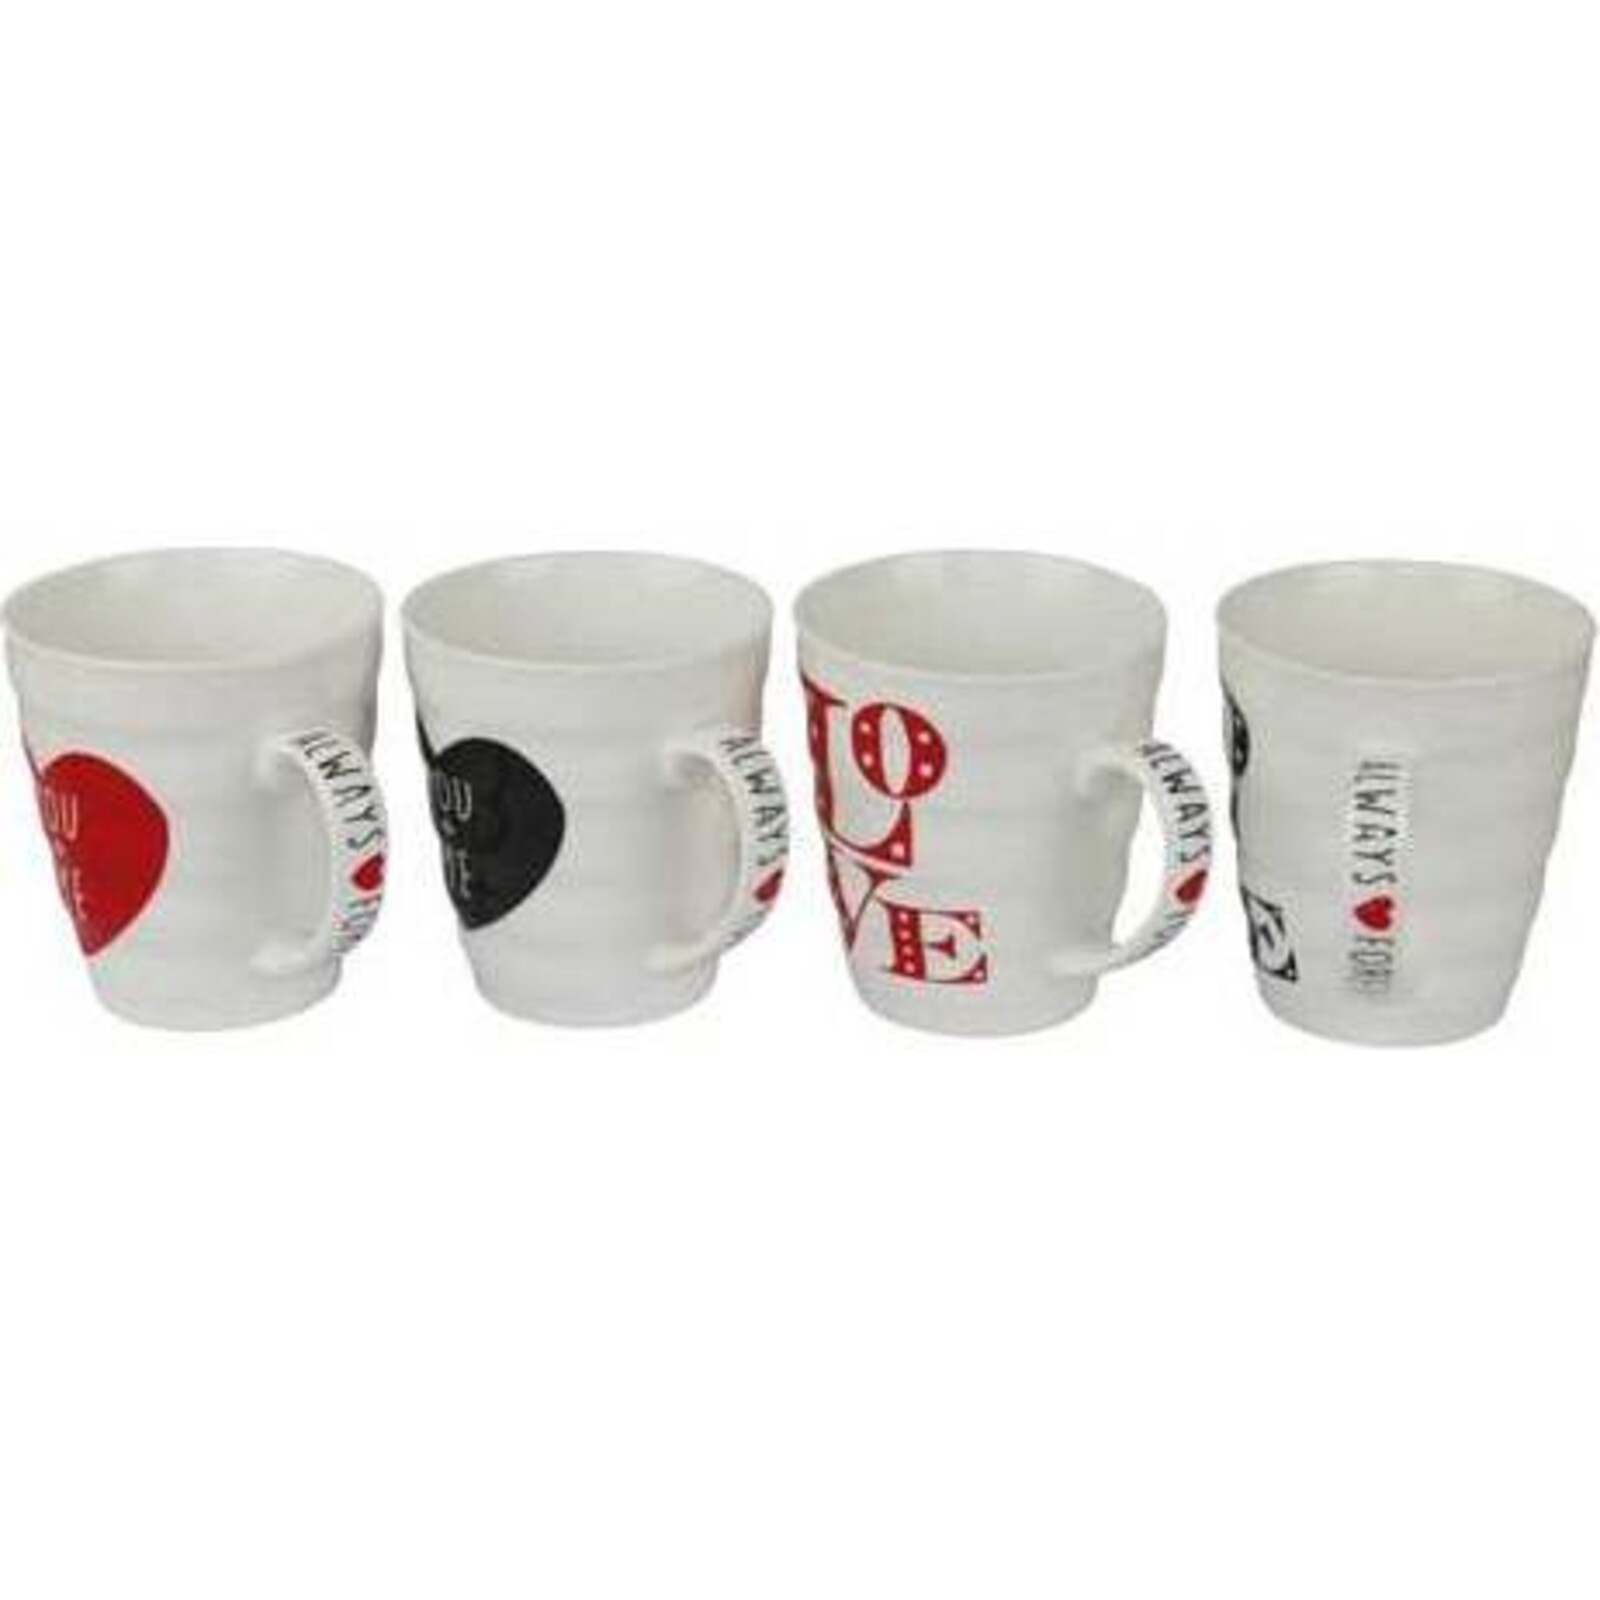 Coffee Mugs Love assorted 4